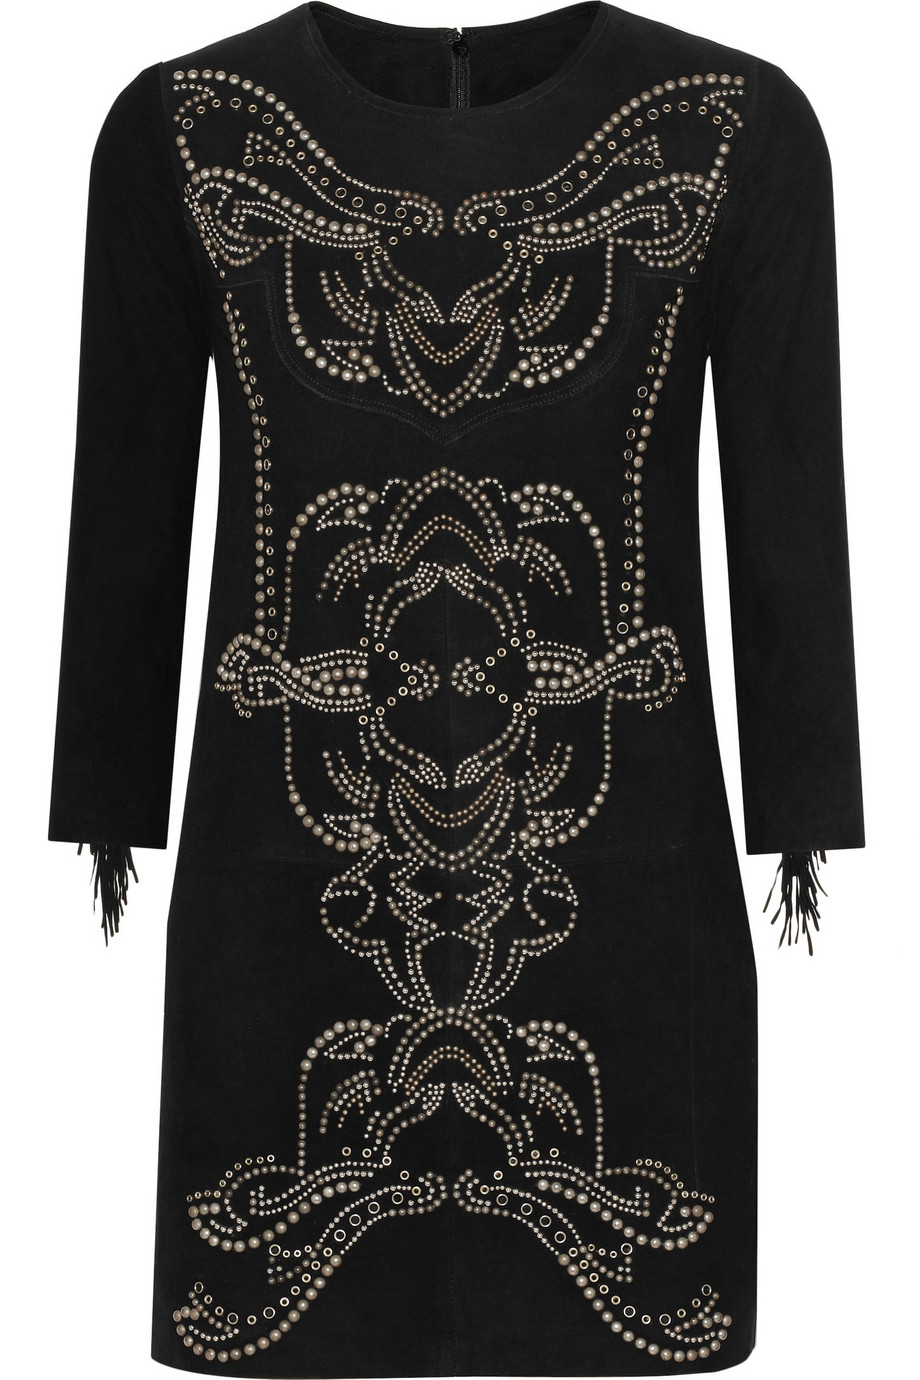 Lyst - Isabel Marant Oriane Embellished Suede Dress in Black